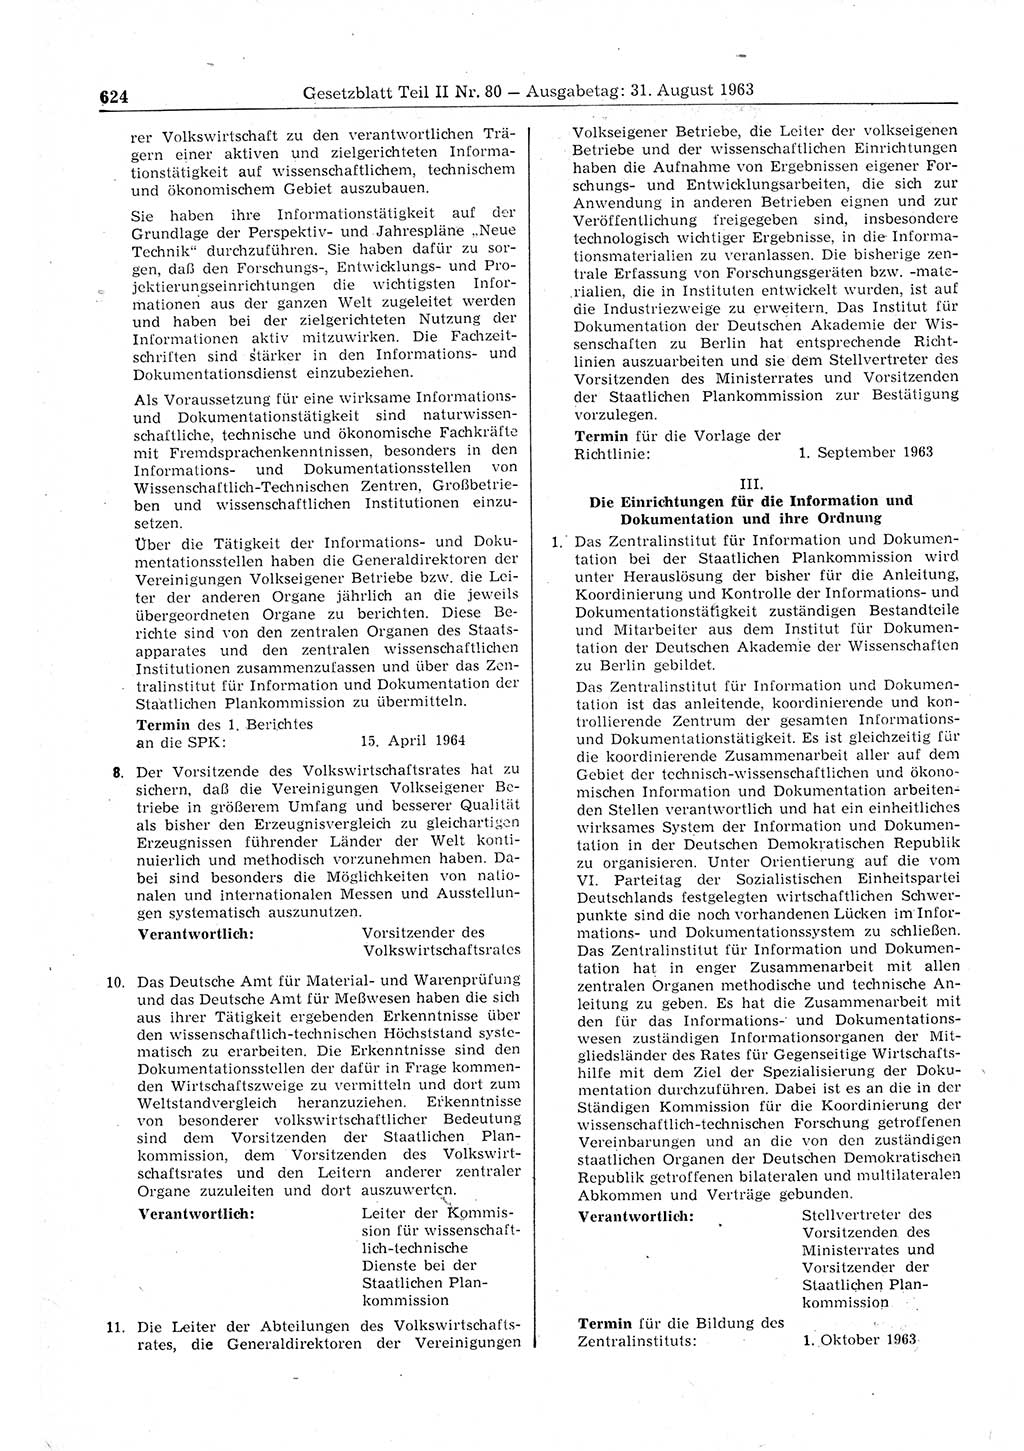 Gesetzblatt (GBl.) der Deutschen Demokratischen Republik (DDR) Teil ⅠⅠ 1963, Seite 624 (GBl. DDR ⅠⅠ 1963, S. 624)